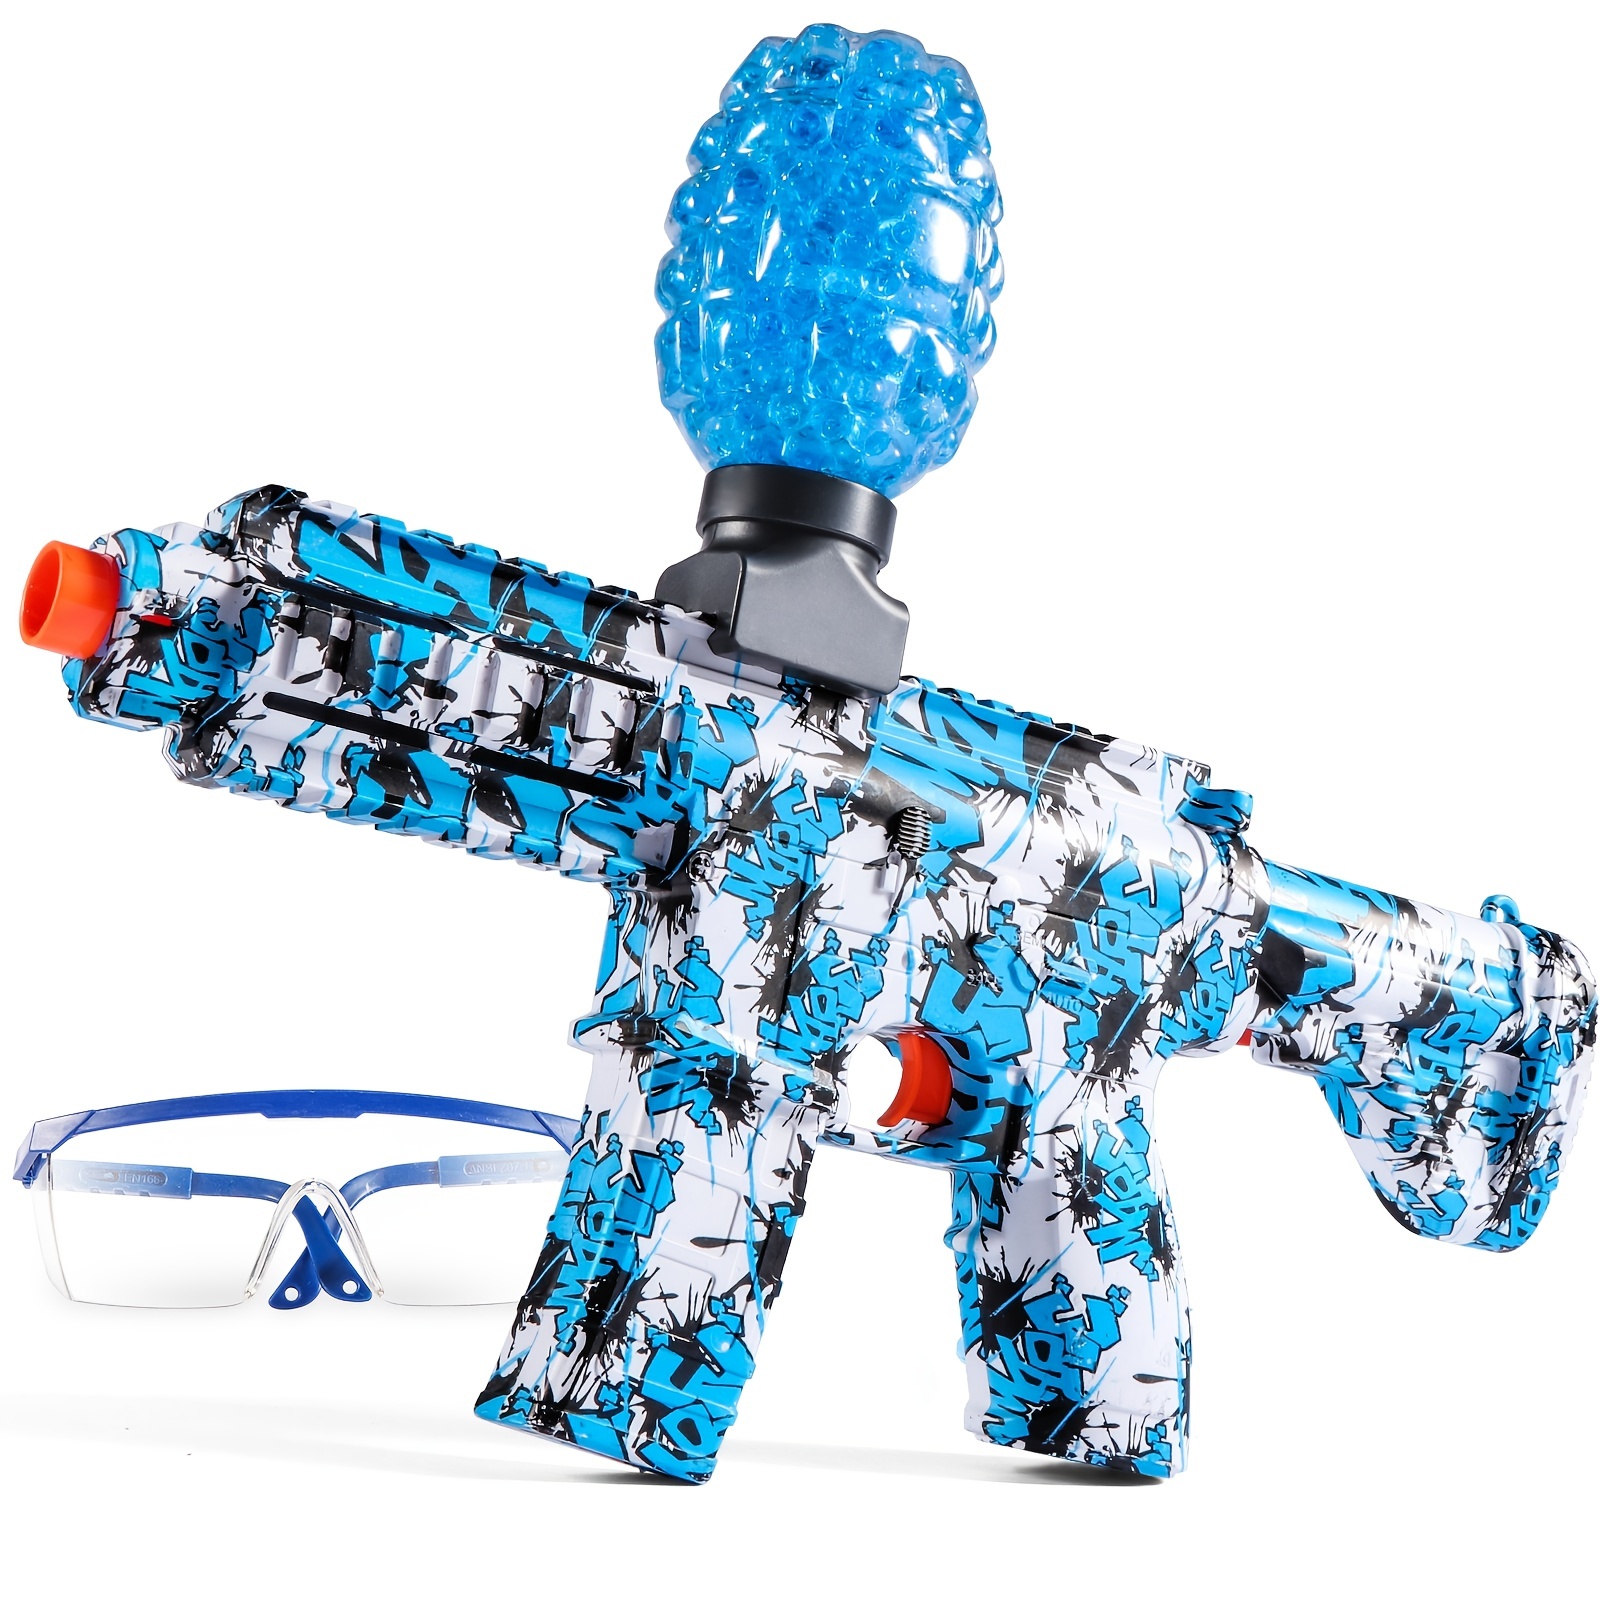 Desert-E - Pistola de bolas de gel eléctrica con lanzador automático de  bolas de gel ecológica, con más de 20000 cuentas de agua y gafas, para  juegos